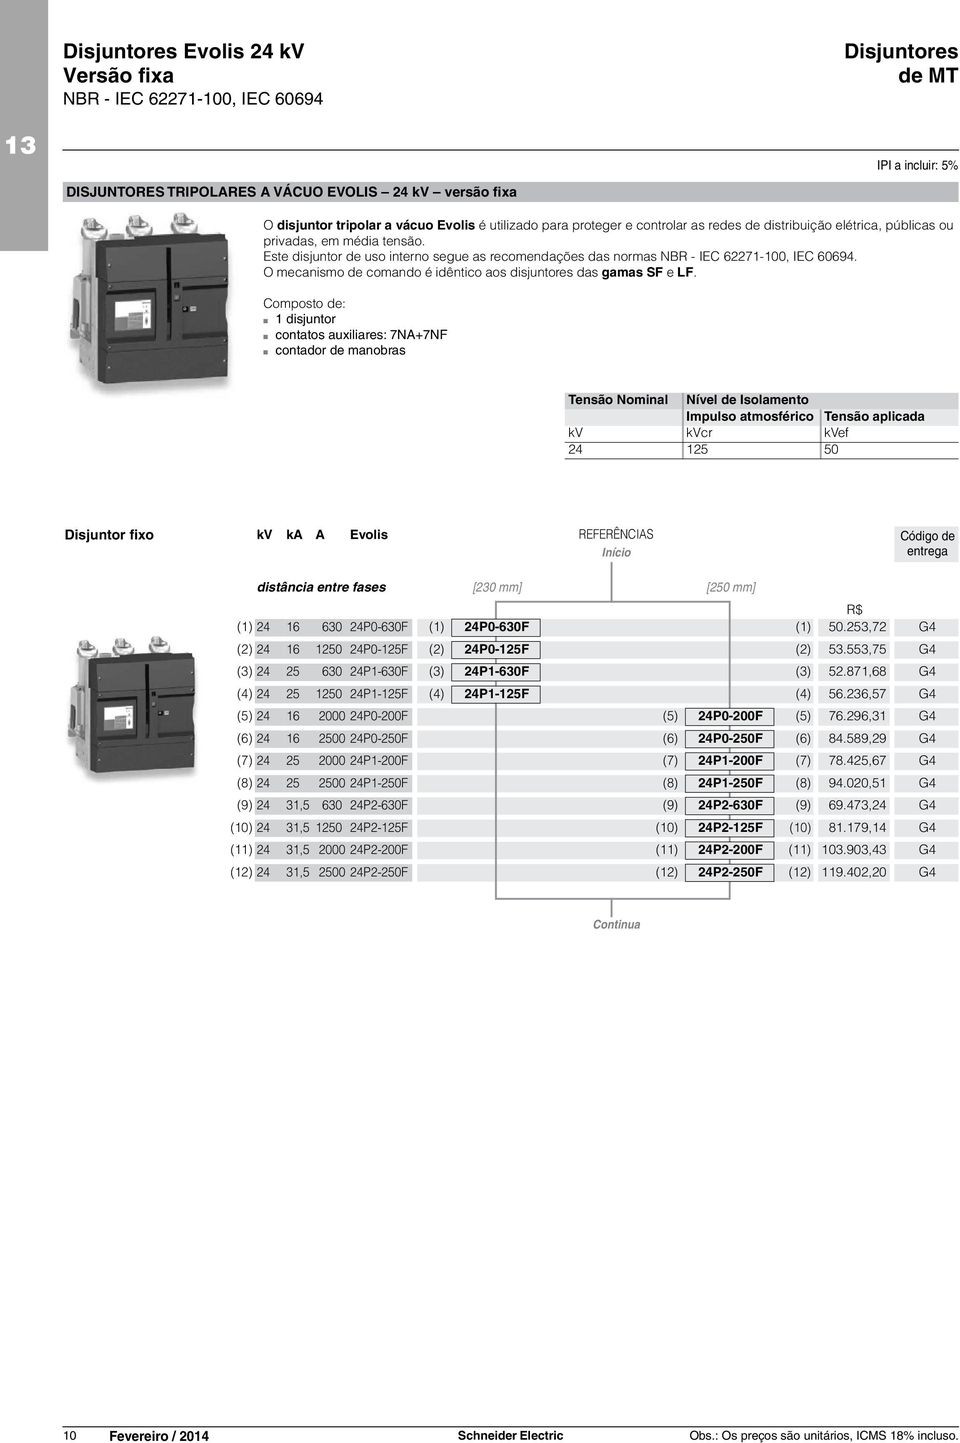 Este disjuntor de uso interno segue as recomendações das normas NBR - IEC 62271-100, IEC 60694. O mecanismo de comando é idêntico aos disjuntores das gamas SF e LF.